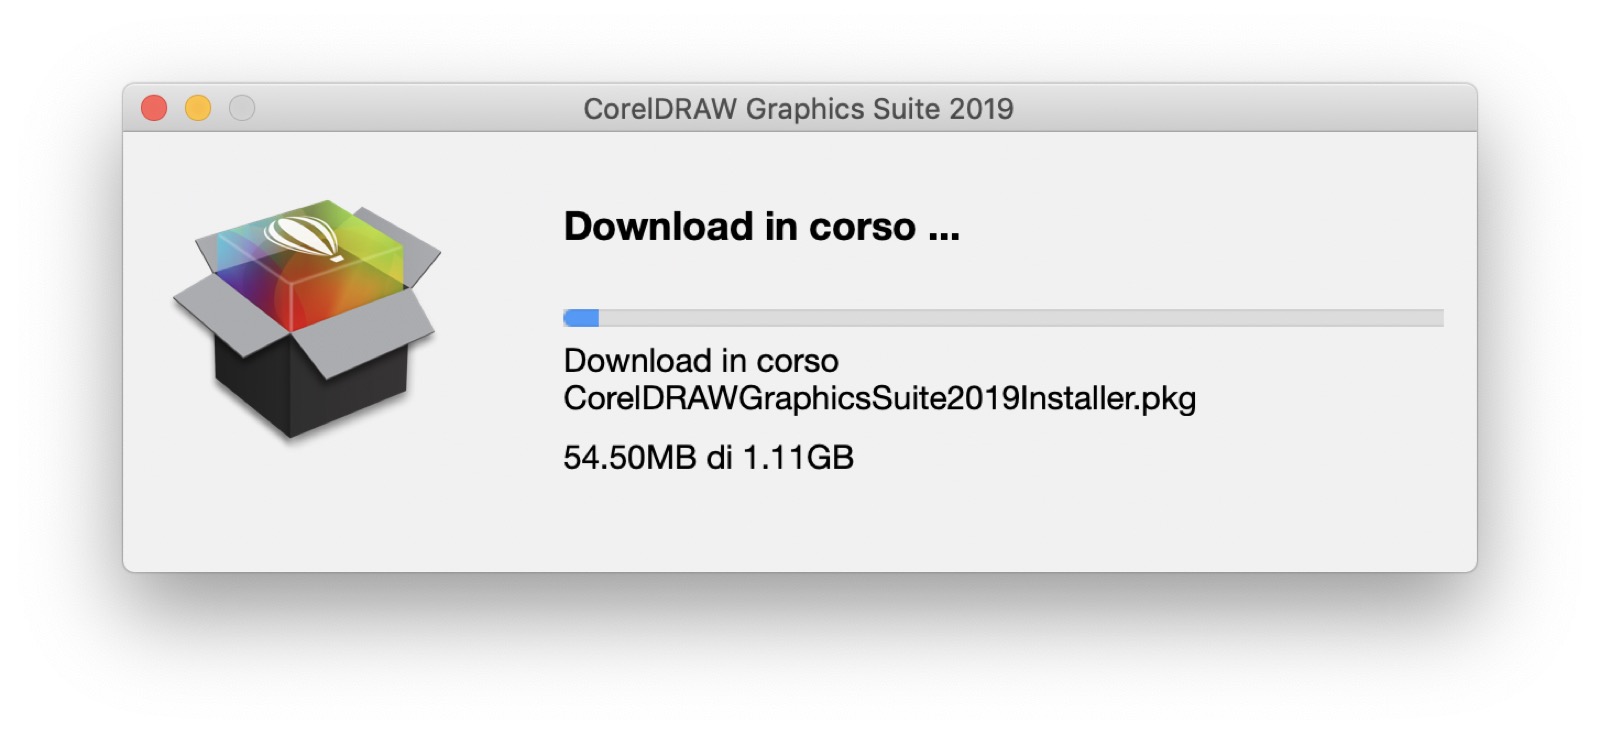 Recensione CorelDRAW Graphics Suite 2019: bella iniziativa, ma c’è ancora da fare